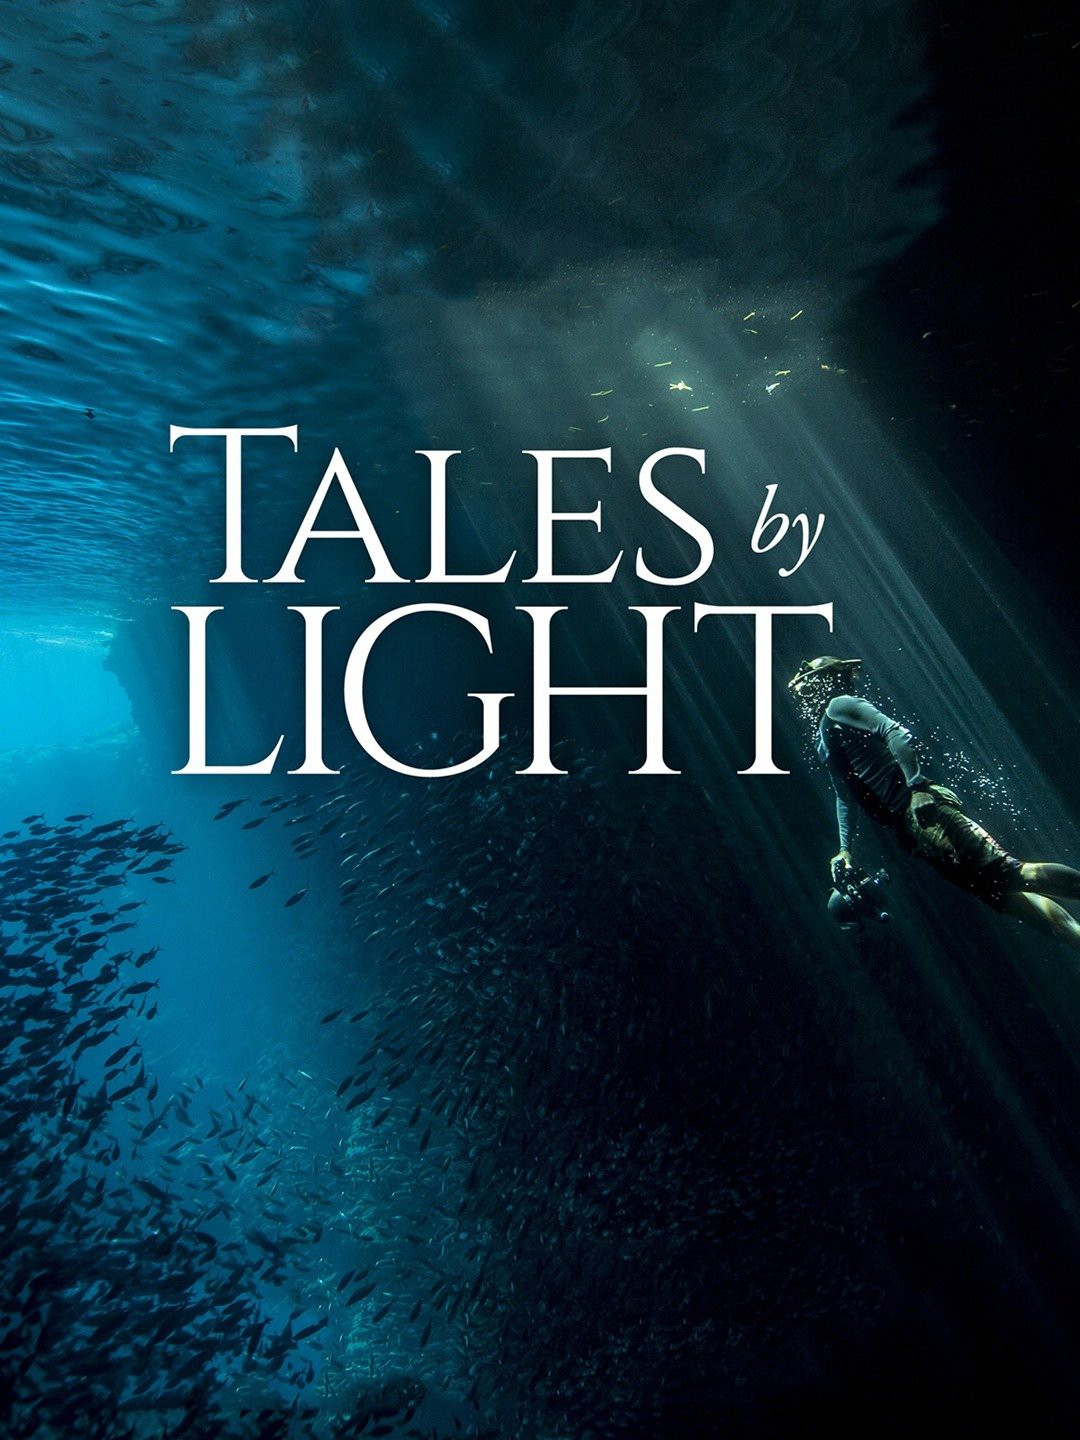 Câu chuyện kể bằng ánh sáng - Câu chuyện kể bằng ánh sáng (2015)